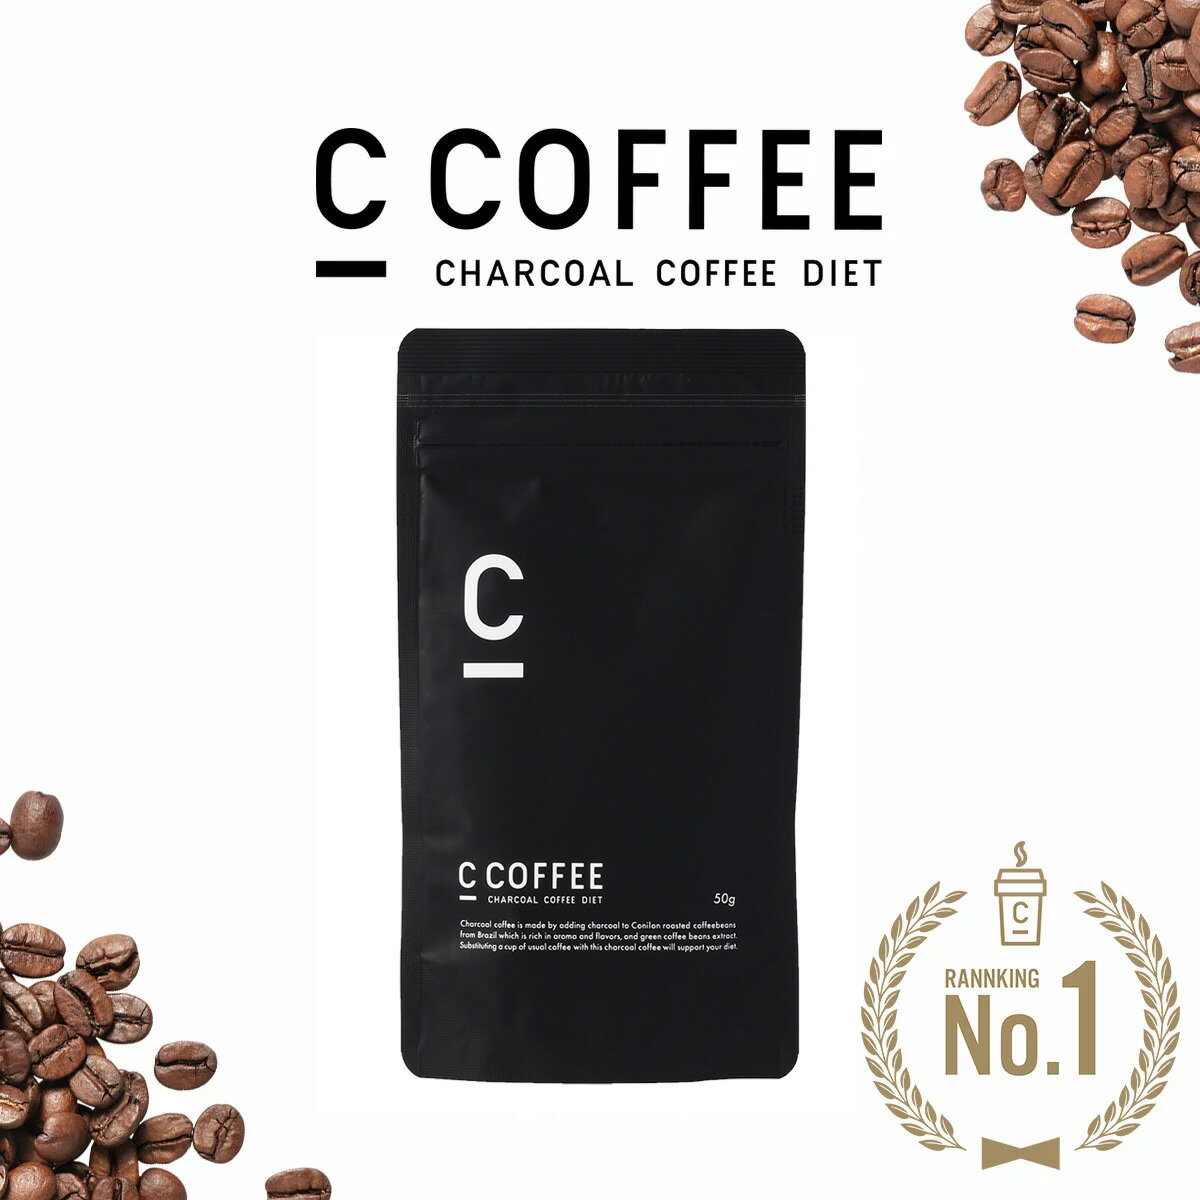 C COFFEE ( シーコーヒー ) ハーフサイズ 50g ダイエットコーヒー チャコールクレンズ MCTオイル ダイエット コーヒー チャコールコーヒー 人気 ccoffee ダイエット飲料 炭コーヒー プレゼント